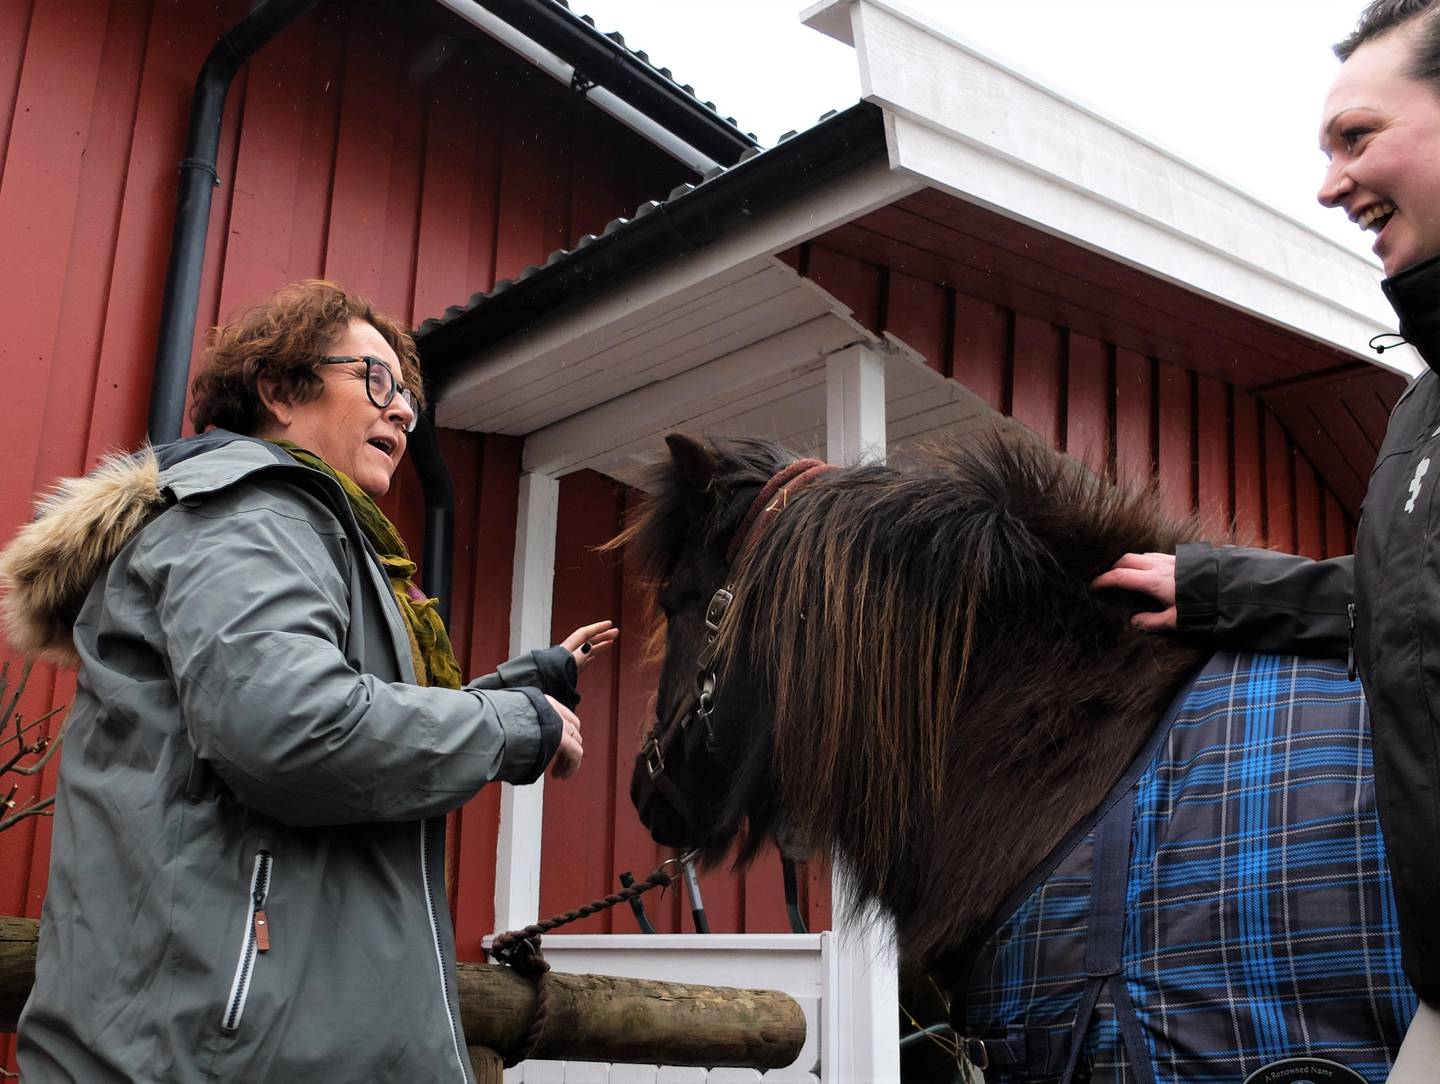 Den dyrekjære ministeren klarte ikke å la være å klappe hestene, selv om hun stadig måtte vaske hendene på grunn av allergi. Elisabeth Johansen til høyre.